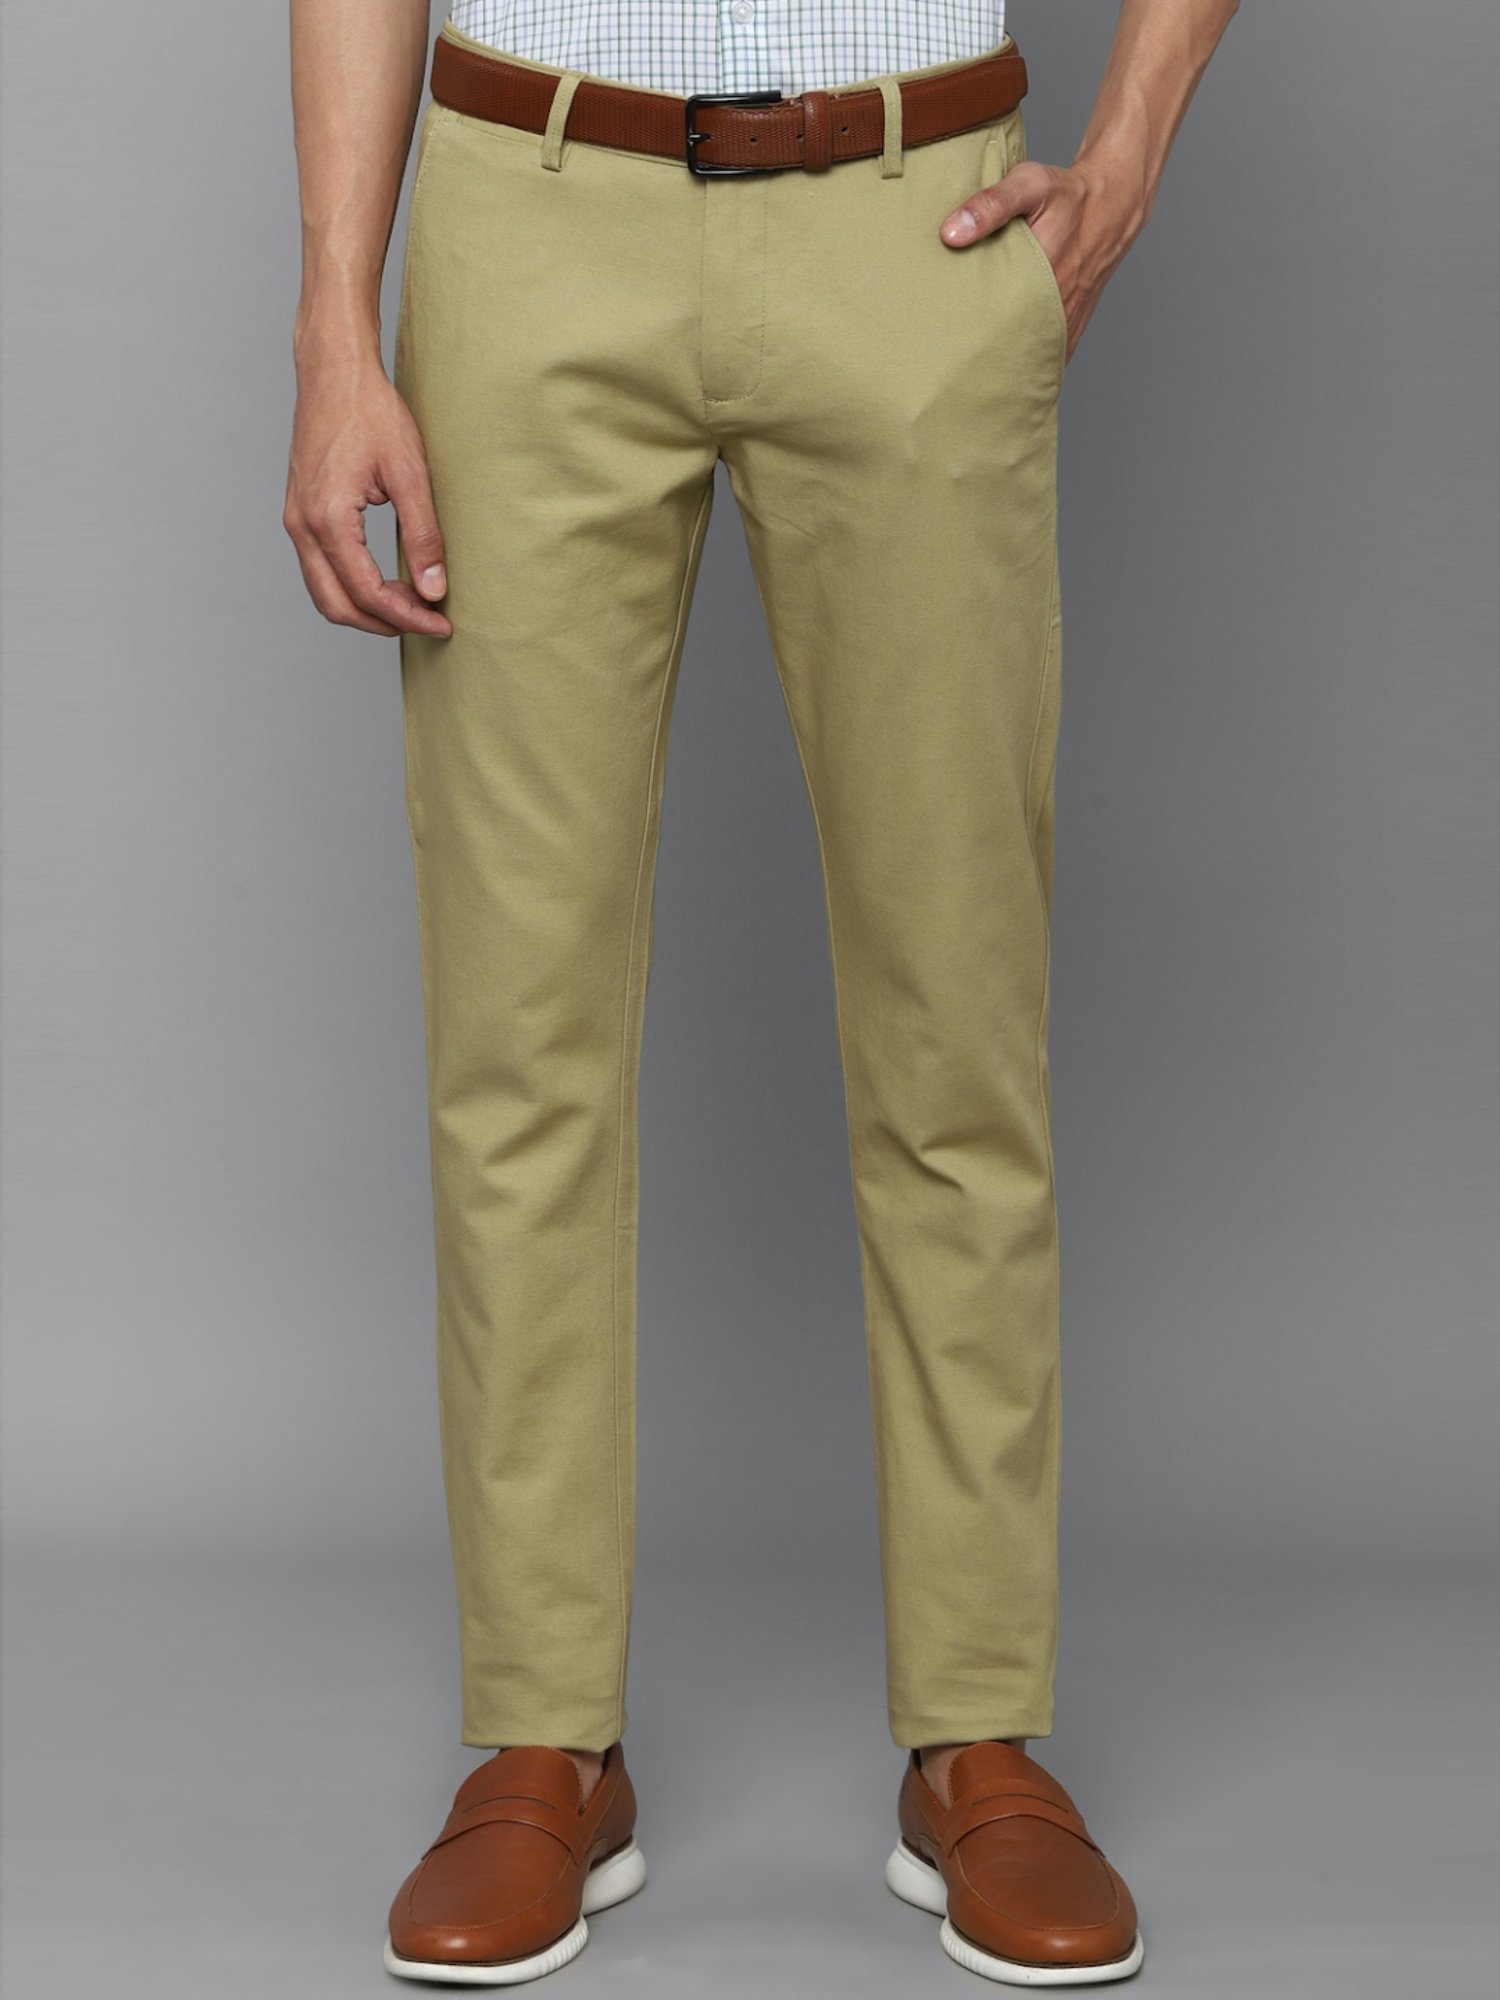 Buy COLOR PLUS Solid Cotton Blend Slim Fit Men's Casual Trousers | Shoppers  Stop